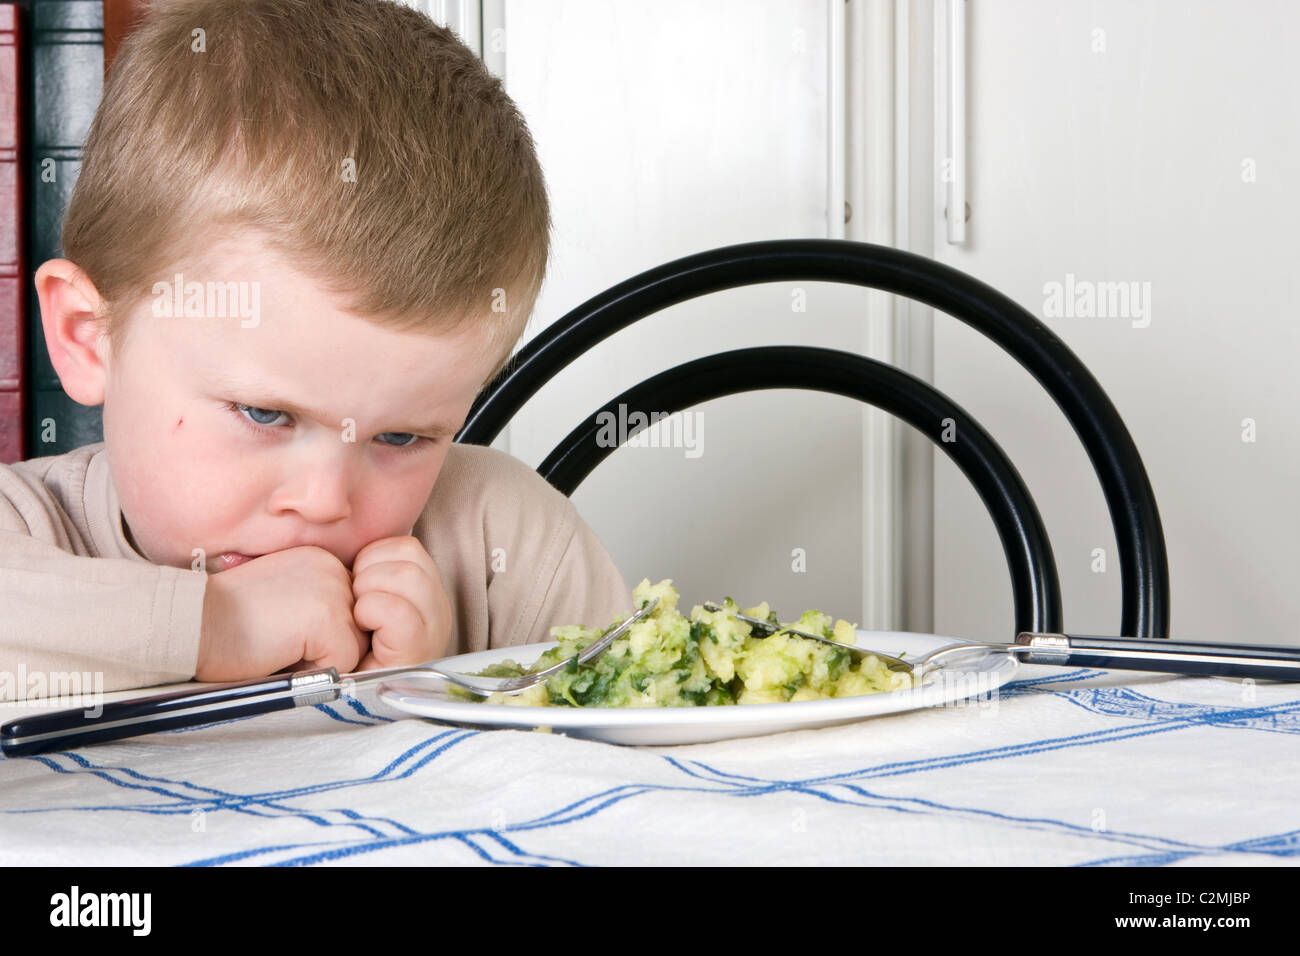 Vier Jahre alter Junge weigert sich, seinen Abend essen Stockfoto